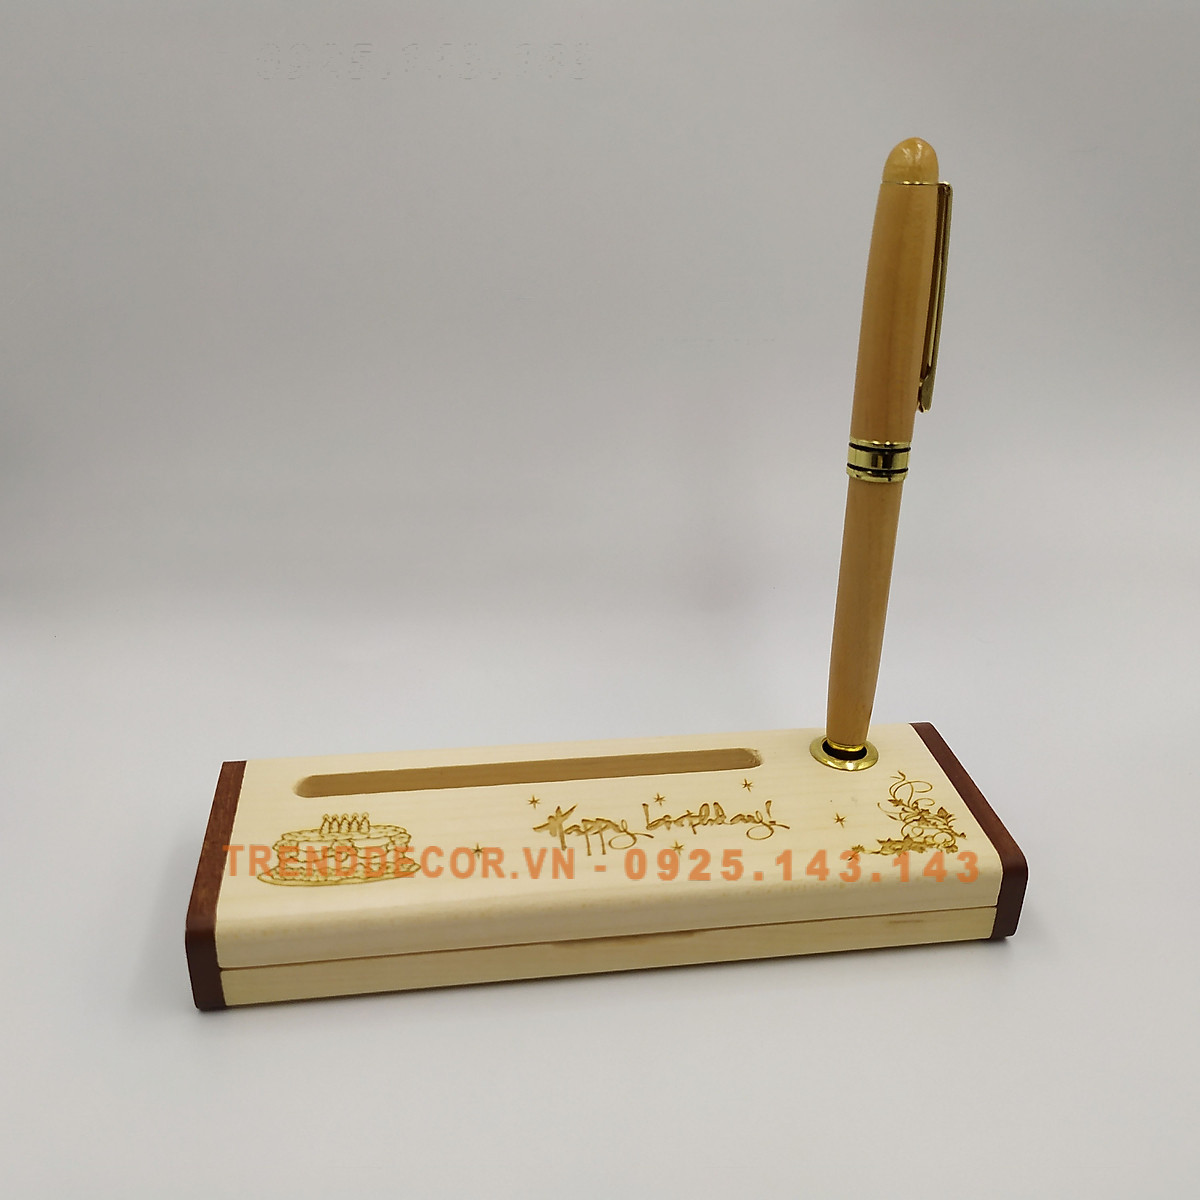 [GIÁ GỐC] Bút gỗ bi xoay - Happy Birthday bút gỗ khắc quà tặng sinh nhật, lễ tết ý nghĩa liên hệ khắc theo yêu cầu